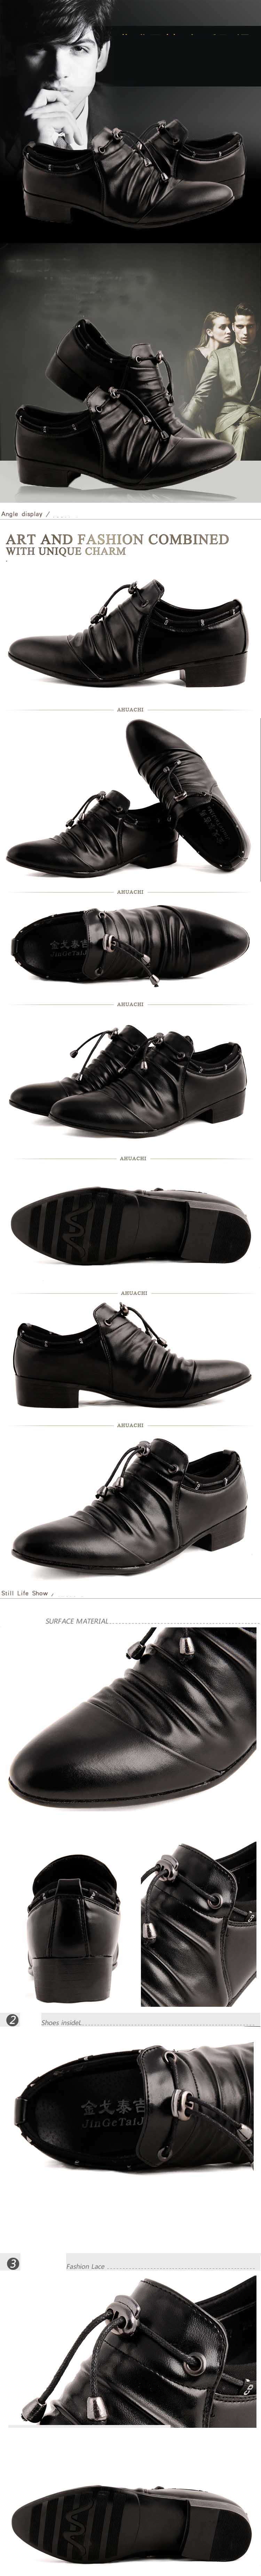 jual sepatu kulit pria model pantofel sangat cocok dipakai kerja ke kantor dengan desain yang modern dan mempunyai gaya seni yang kuat dalam sepatu kulit ini